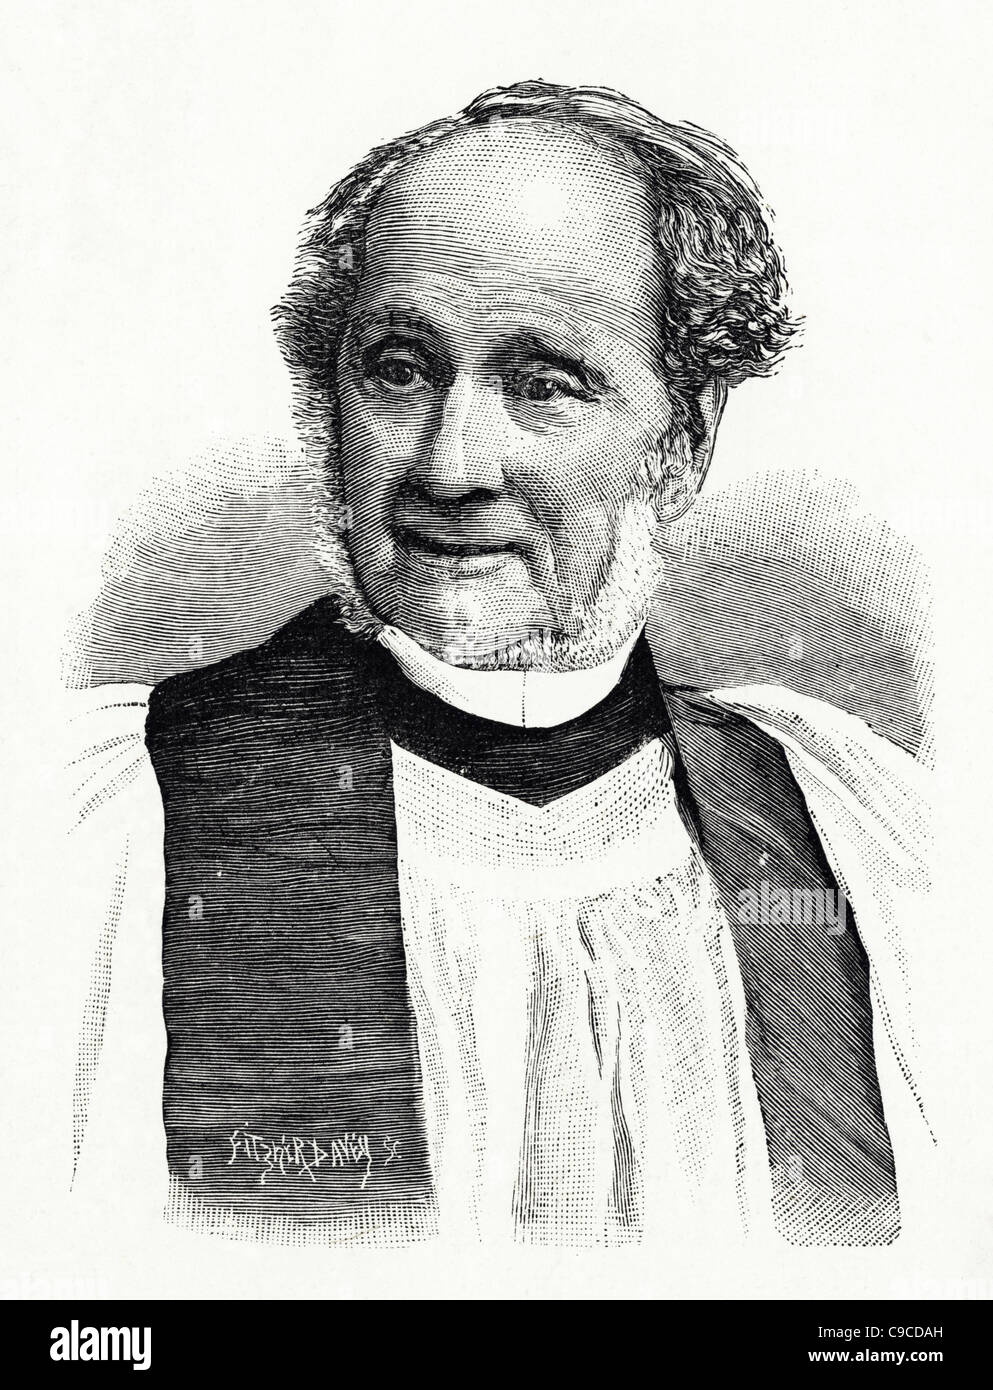 Droit Rev Charles Wordsworth M.A. (1806 - 1892) fut évêque de St Andrews en Ecosse Dunblane et Dunkeld Banque D'Images